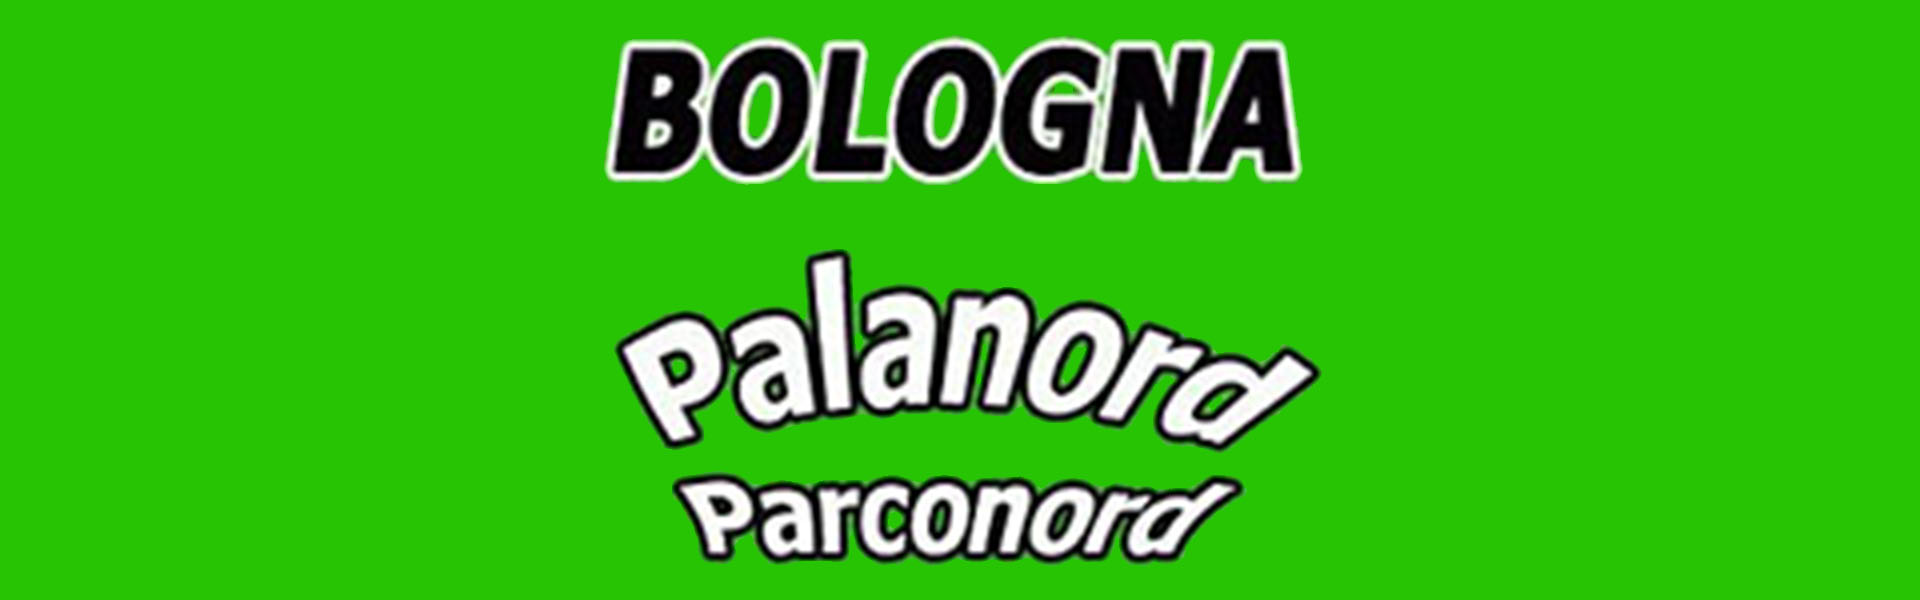 Palanord - Bologna